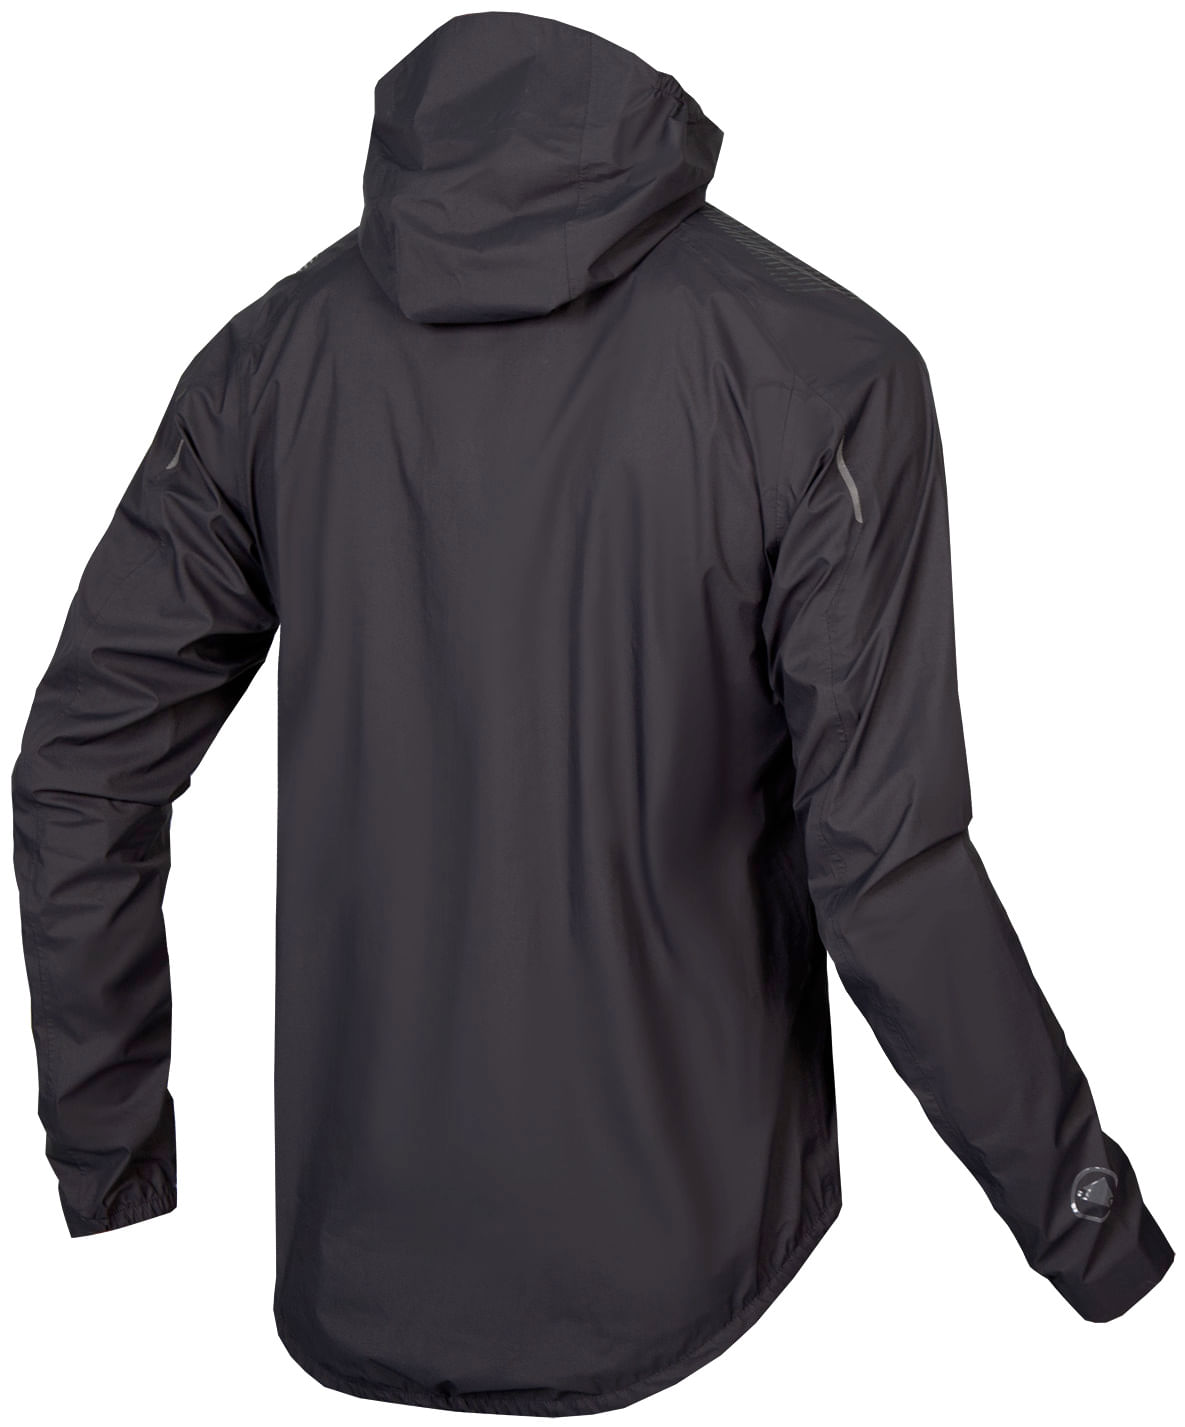 2021 Endura GV500 Waterproof Jacket | Cycling Jackets